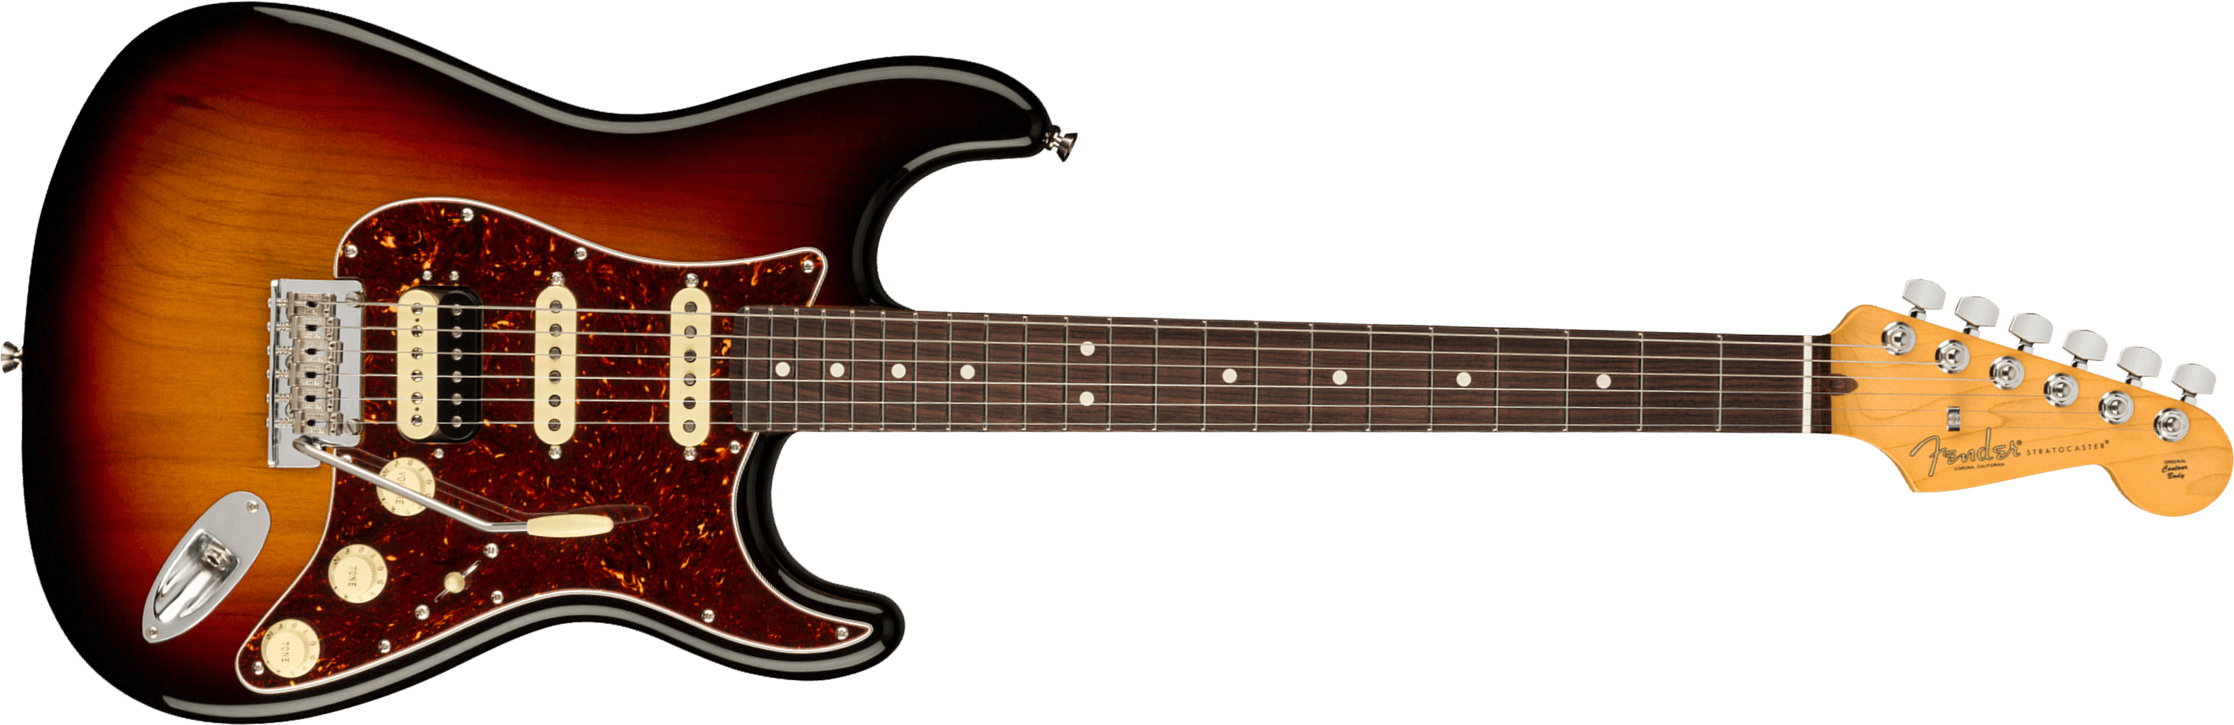 Fender Strat American Professional Ii Hss Usa Rw - 3-color Sunburst - Guitare Électrique Forme Str - Main picture